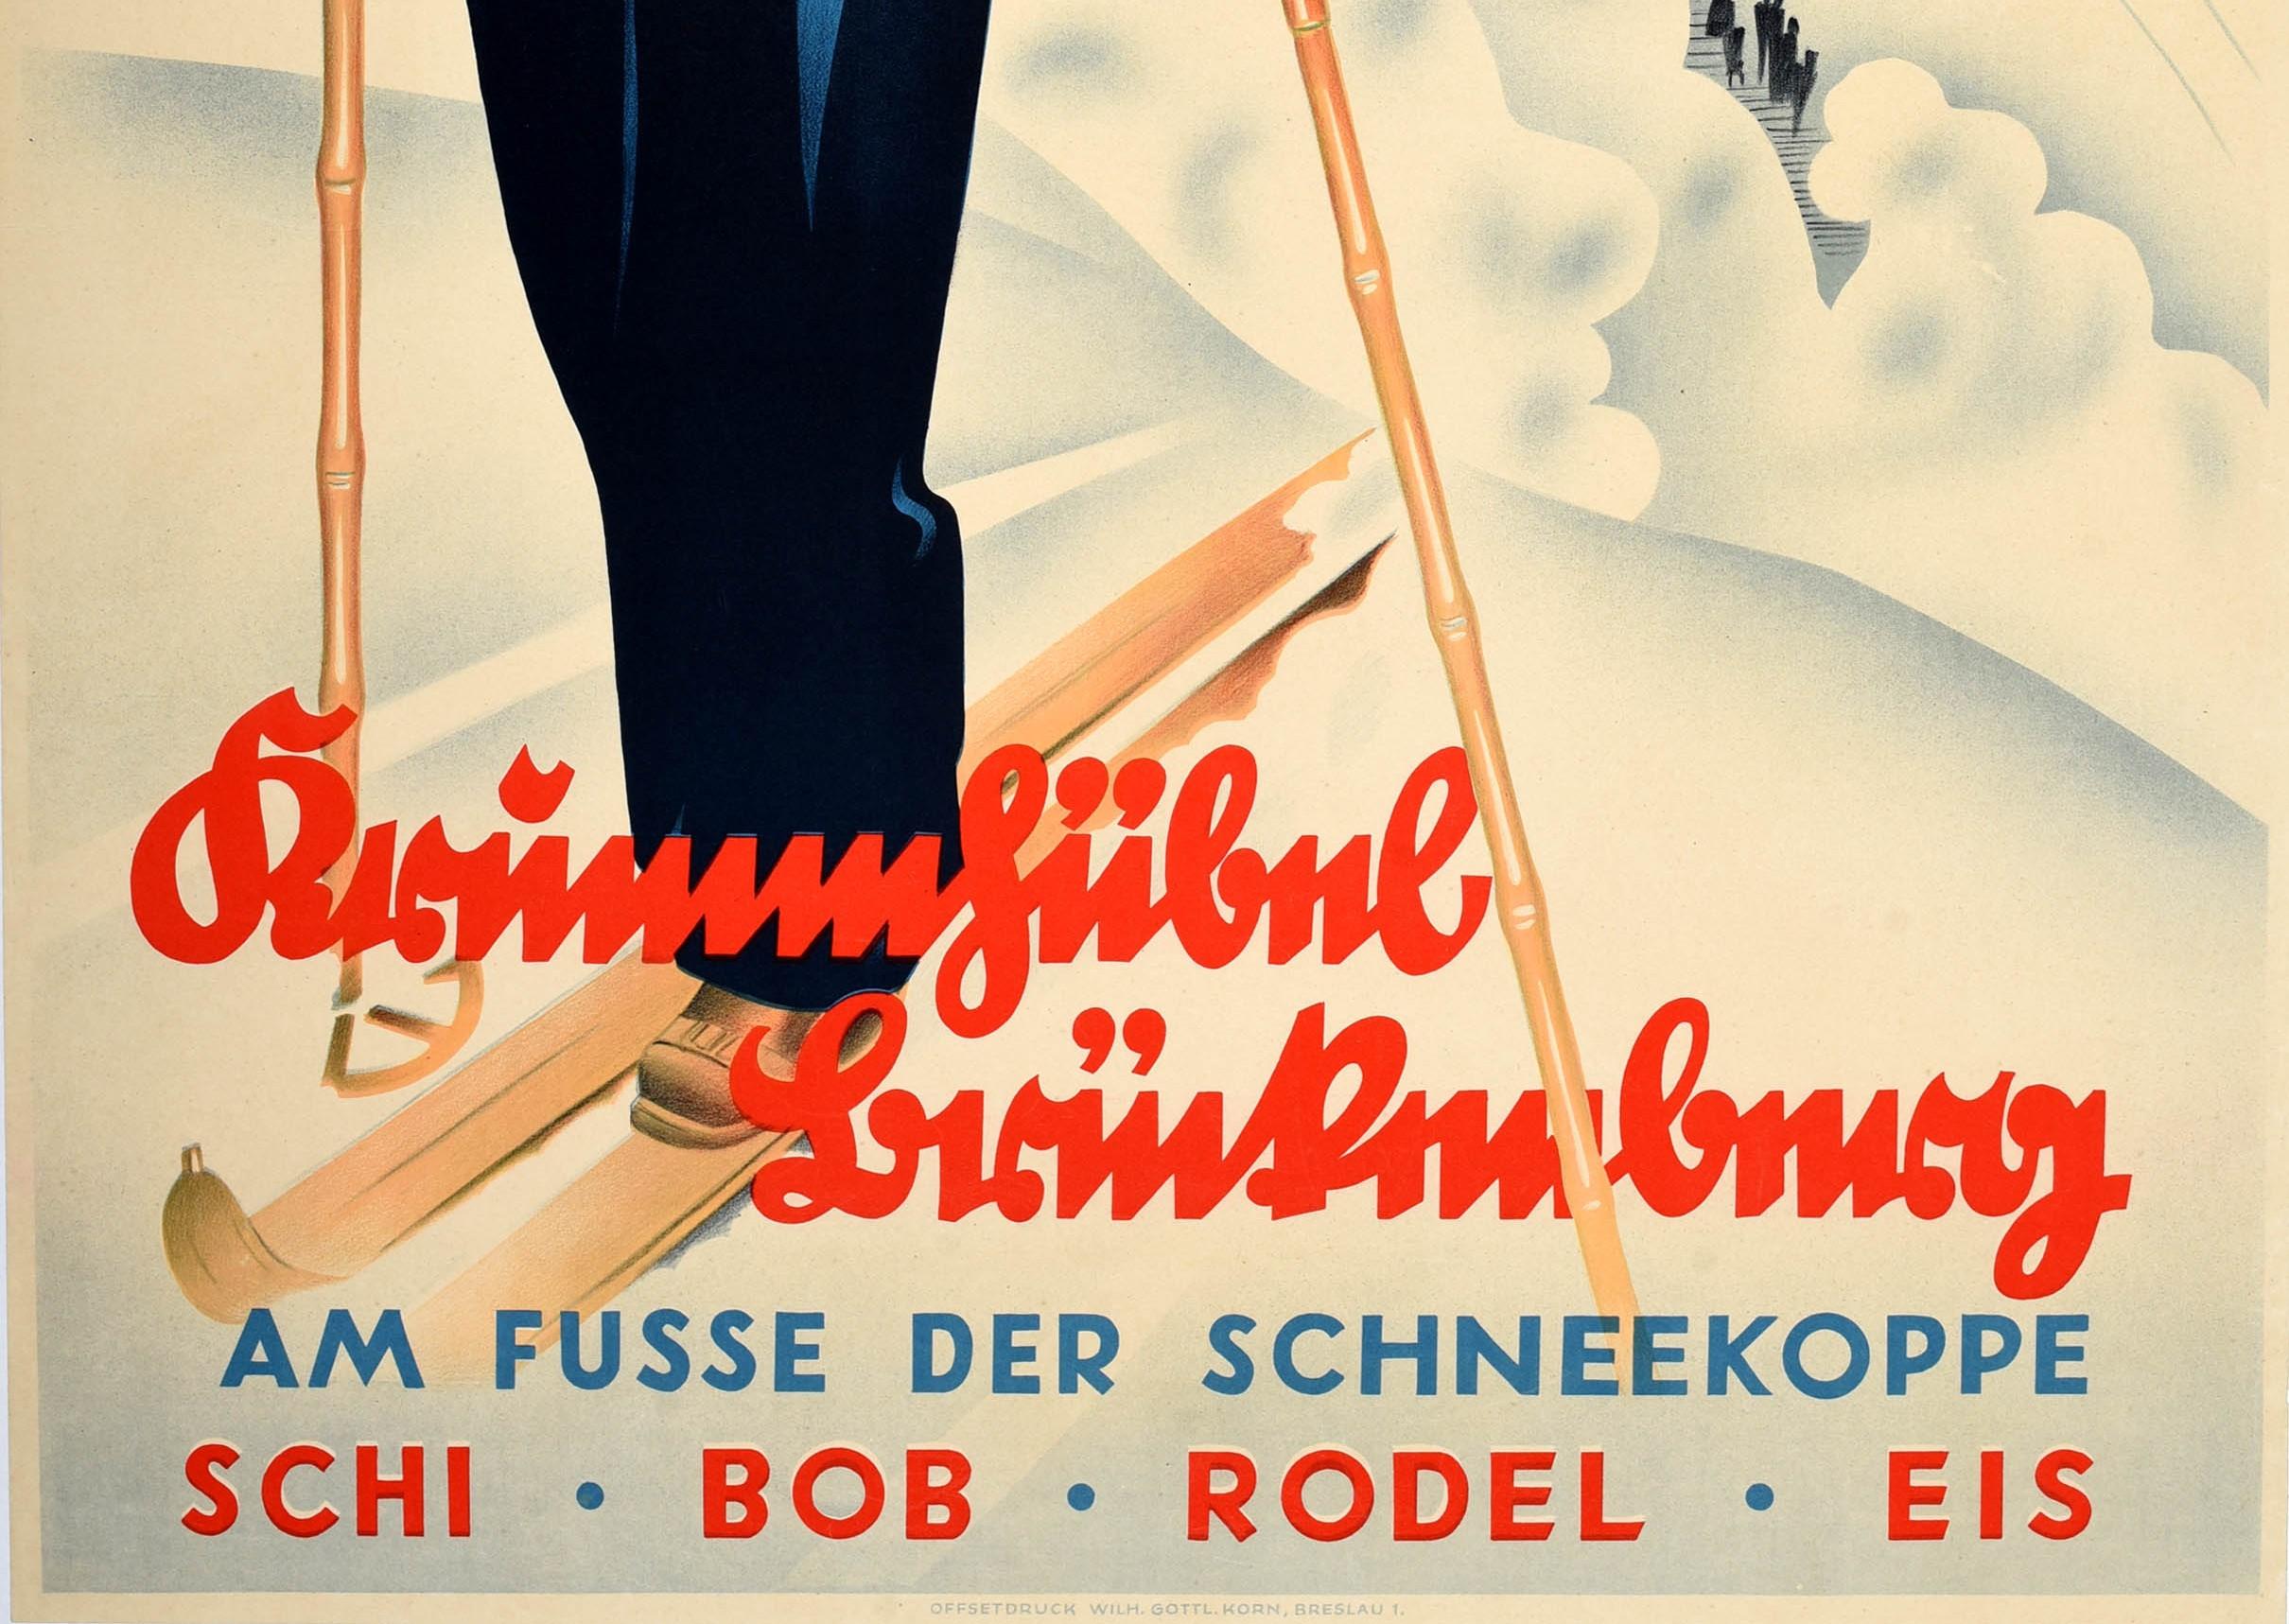 Affiche originale de voyage pour le ski et les sports d'hiver pour la station de montagne Krummhubel au pied du Schneekoppe Ski Bobsled Toboggan Ice / Krummhubel Bruckenberg am Fusse der Schneekoppe Schi Bob Rodel Eis. Le Schneekoppe / Riesenkoppe